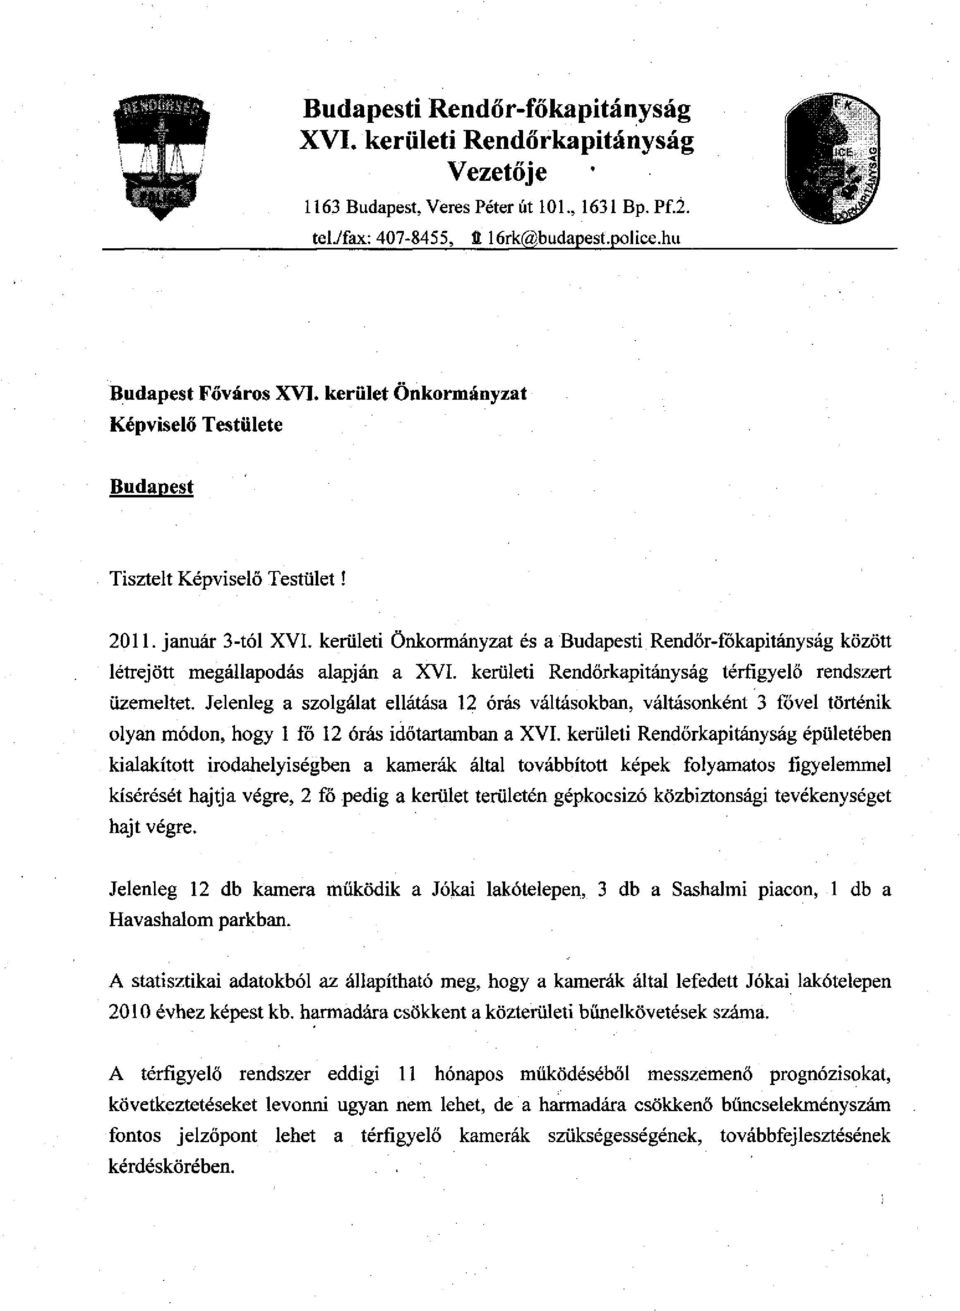 kerületi Önkormányzat és a Budapesti Rendőr-főkapitányság között létrejött megállapodás alapján a XVI. kerületi Rendőrkapitányság térfigyelő rendszert üzemeltet.